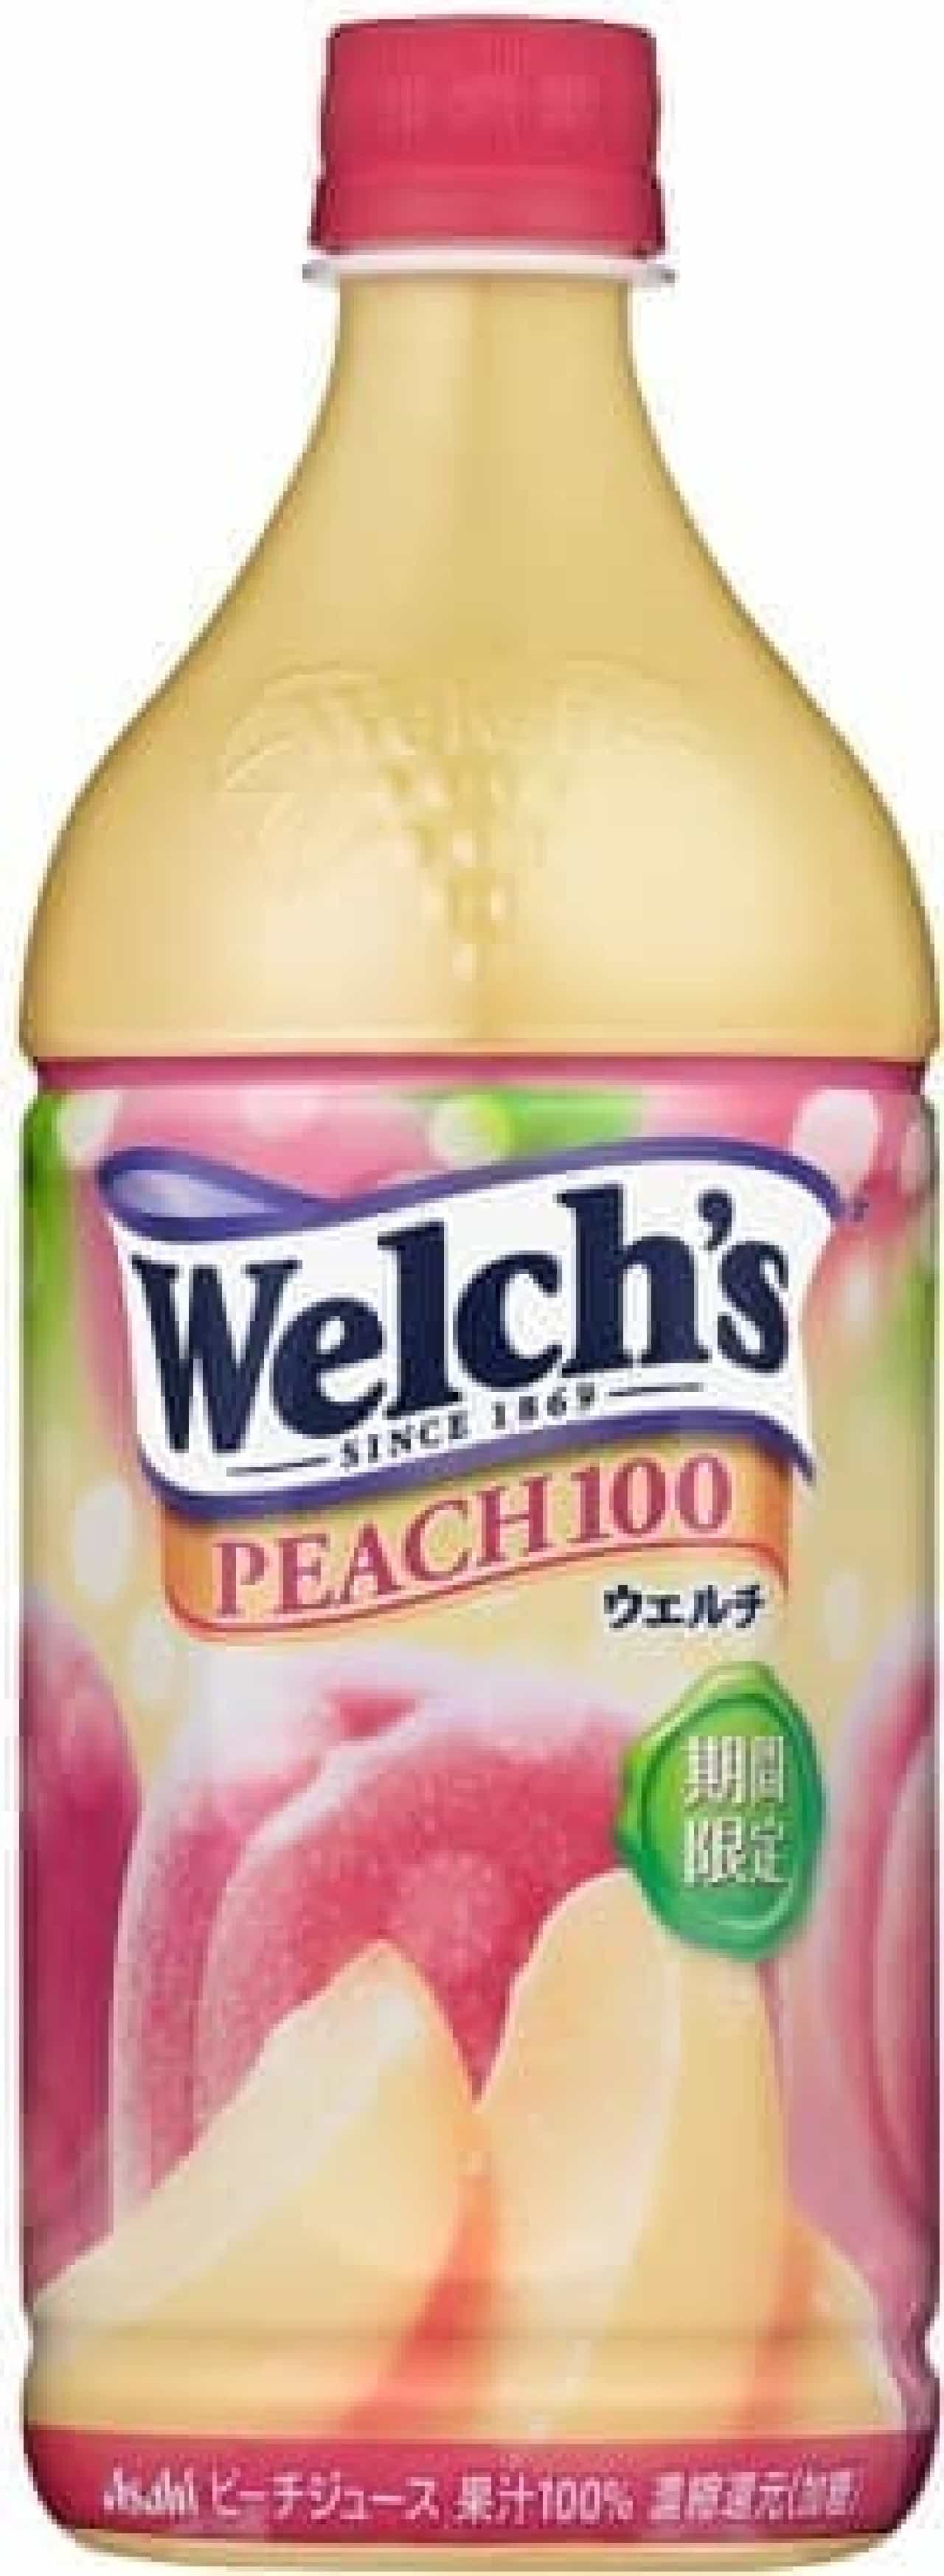 アサヒ飲料「Welch's（ウェルチ） ピーチ100」